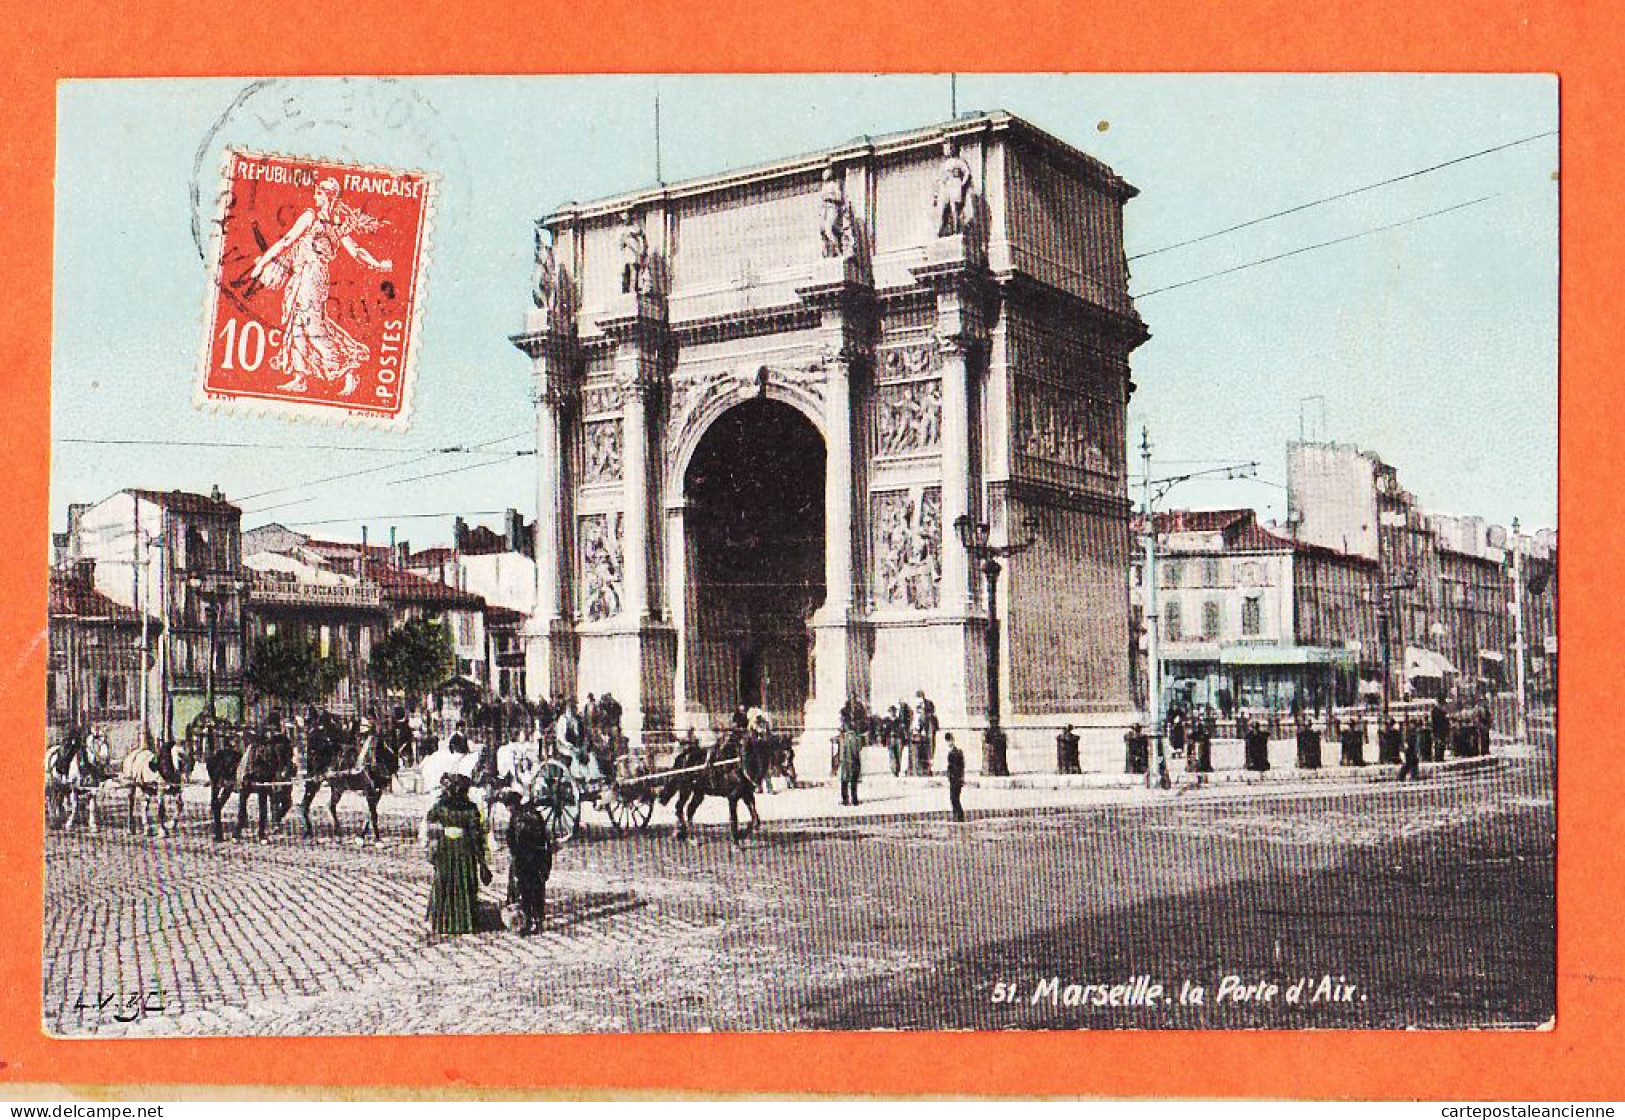 35013 / Aqua-Photo LEOPOLD VERGER 51 MARSEILLE (13) La Porte D' AIX 1910 à GARIDOU Mercerie Port-Vendres - Canebière, Centre Ville